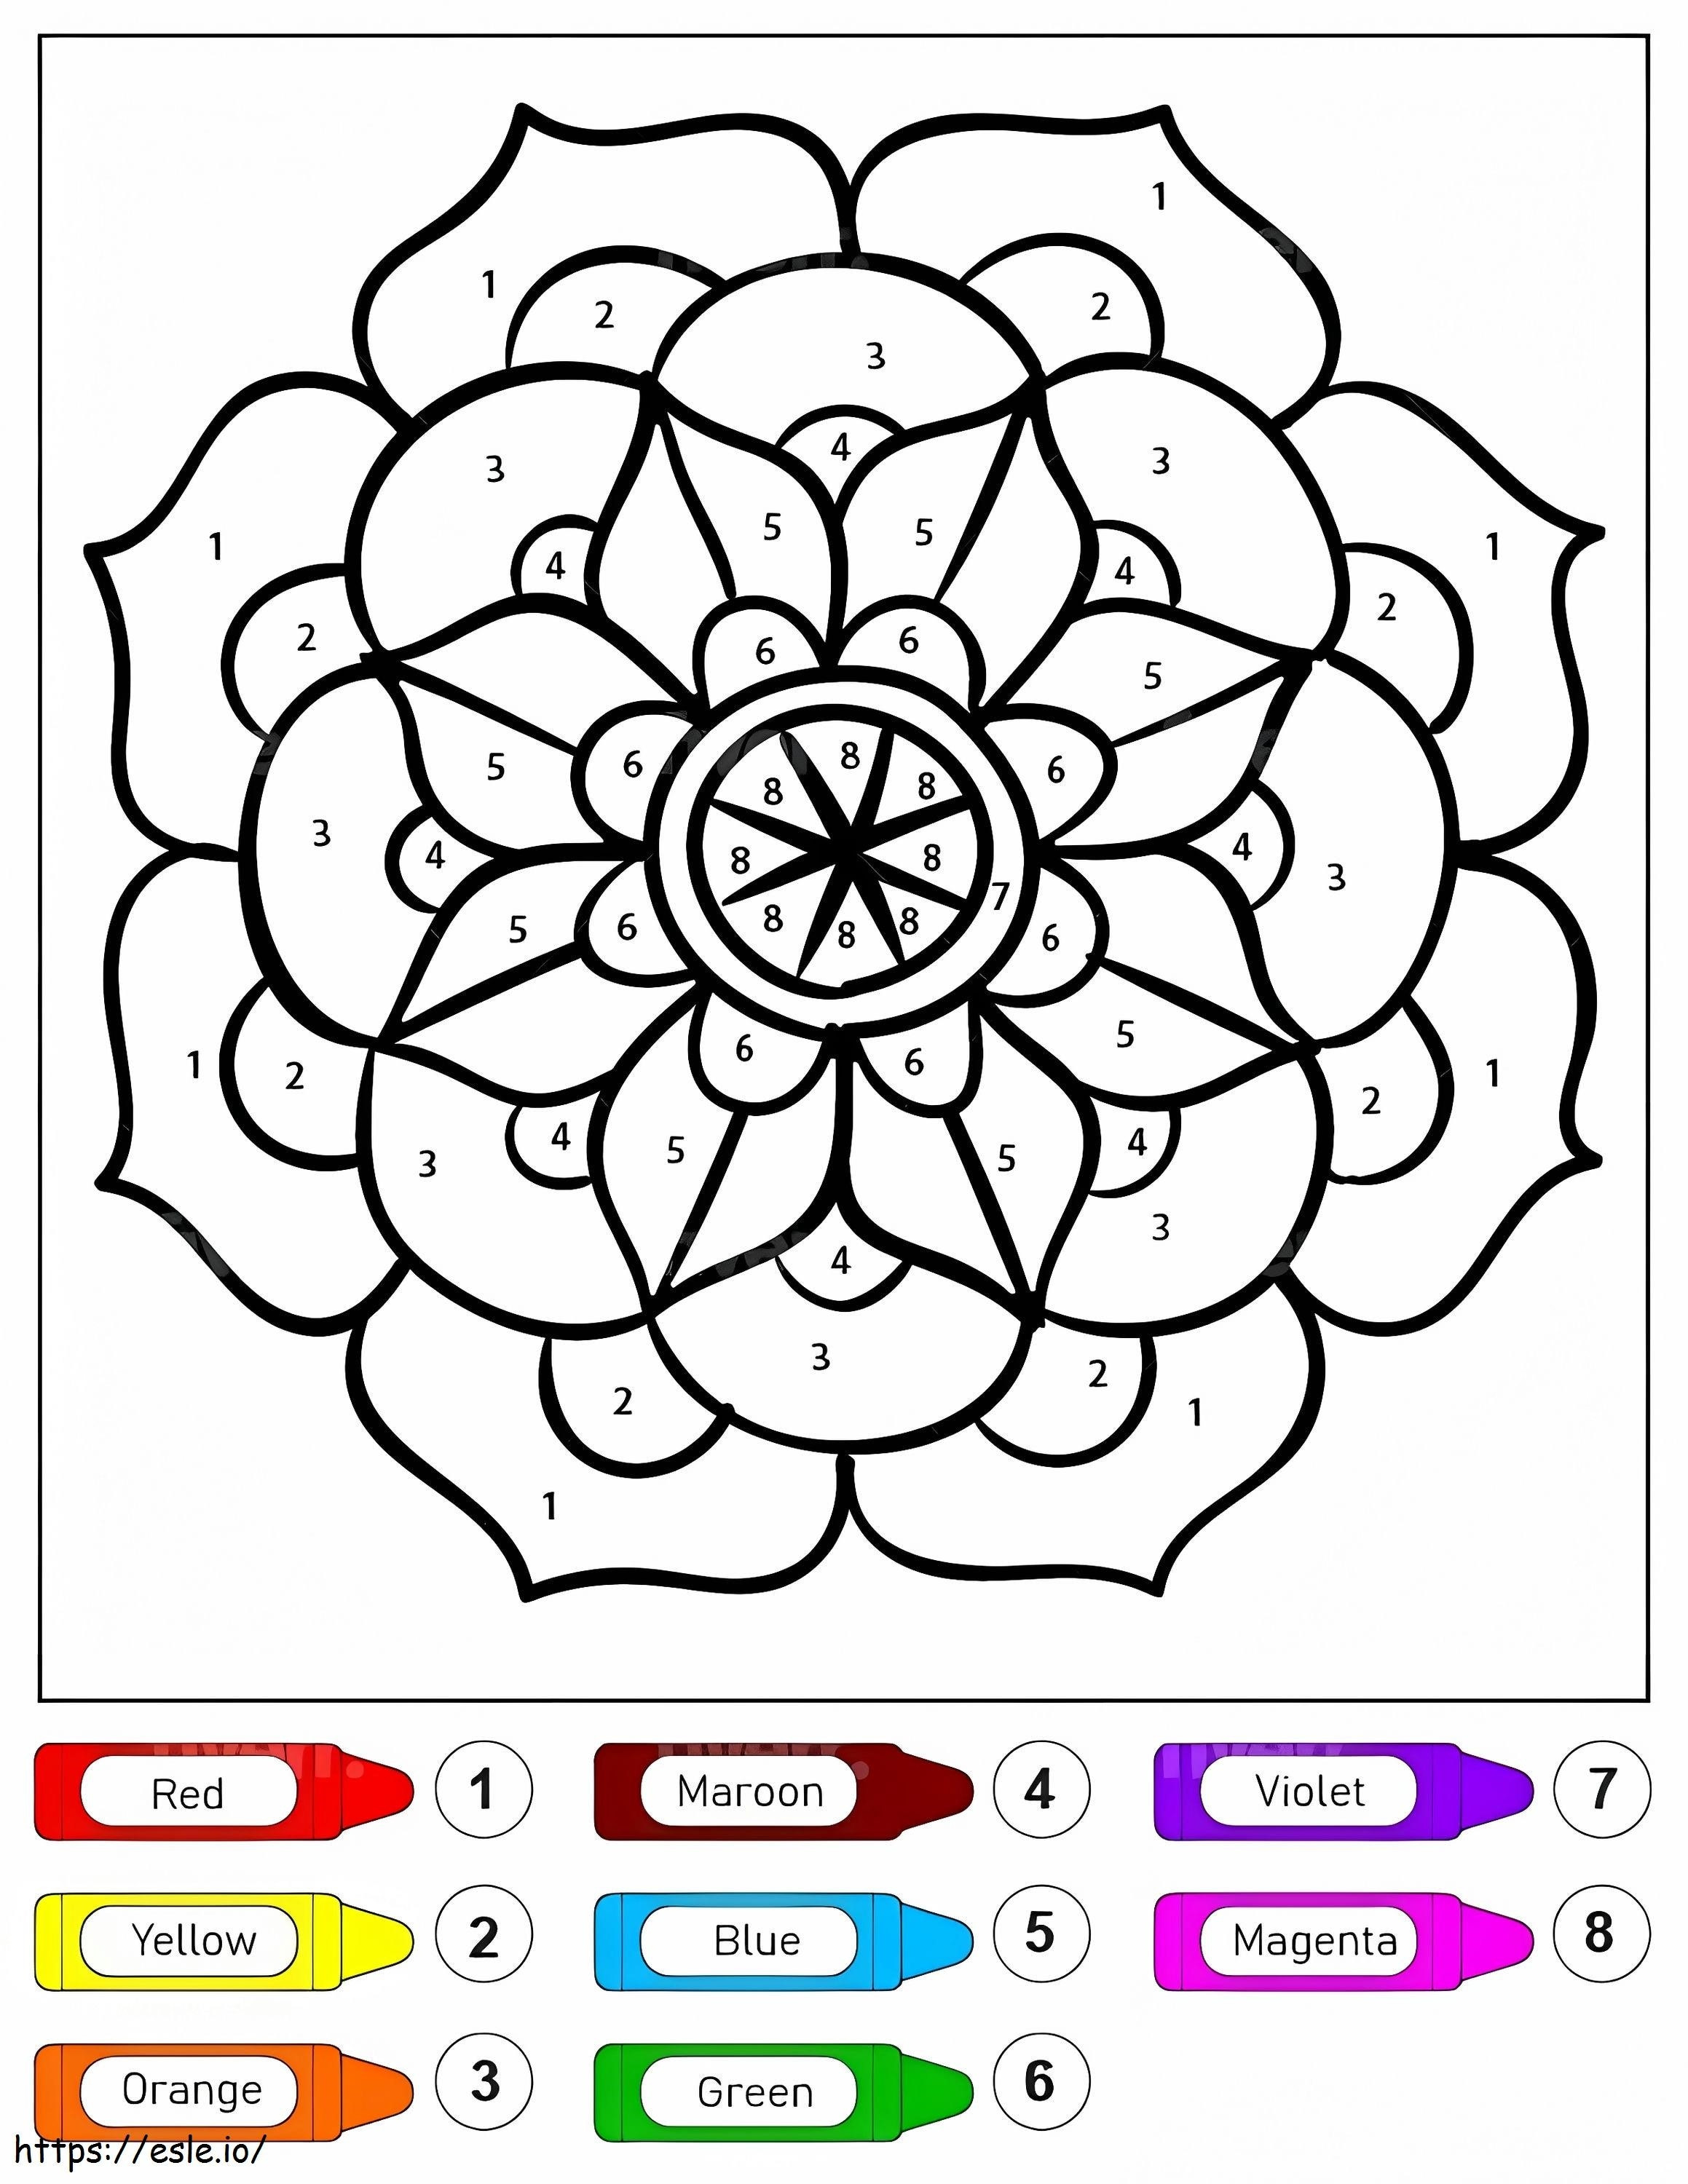 Colorear por Números un Mandala de Flores para Niños para colorear